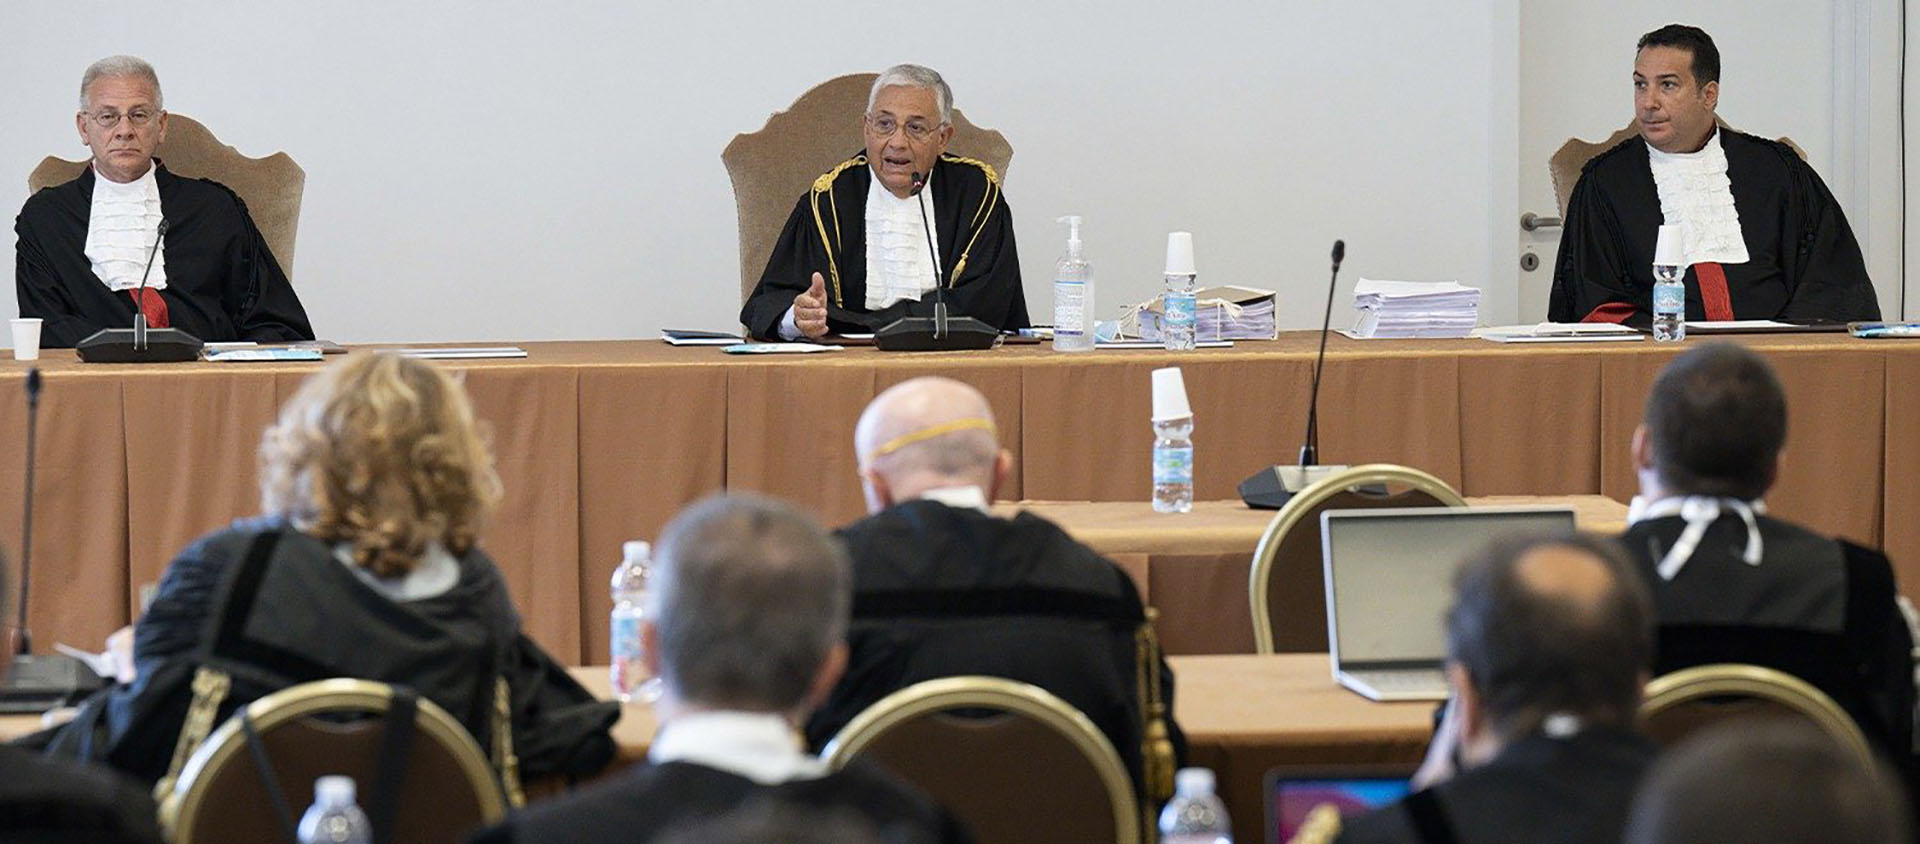 Entre autres grands enjeux du Vatican, le procès déterminera la crédibilité des réformes du pape François | © Vaitcan News